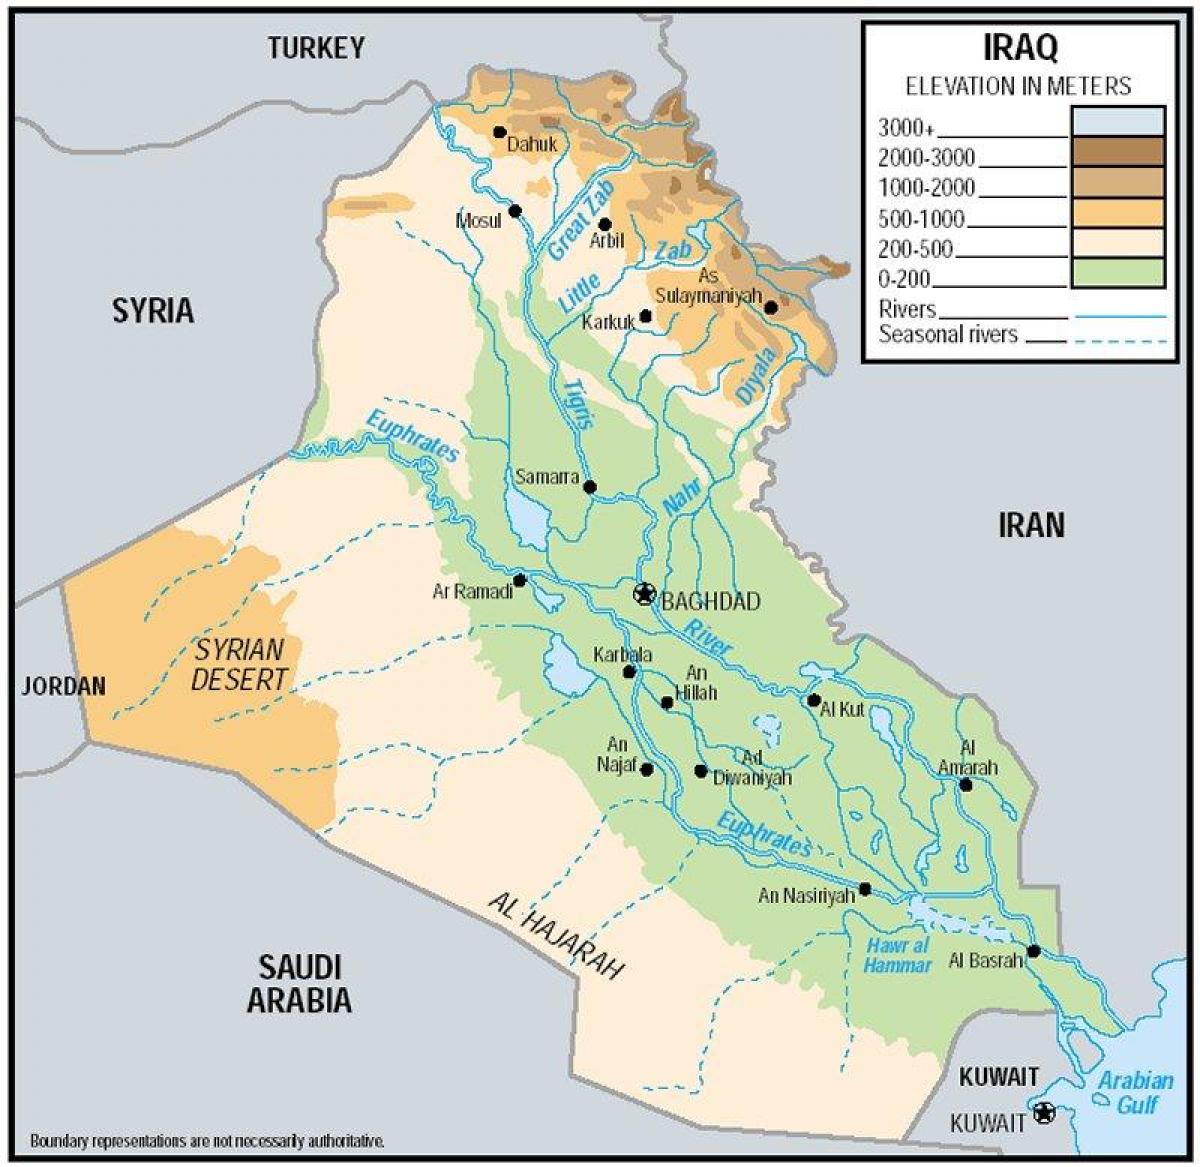 Mapa ng Iraq elevation